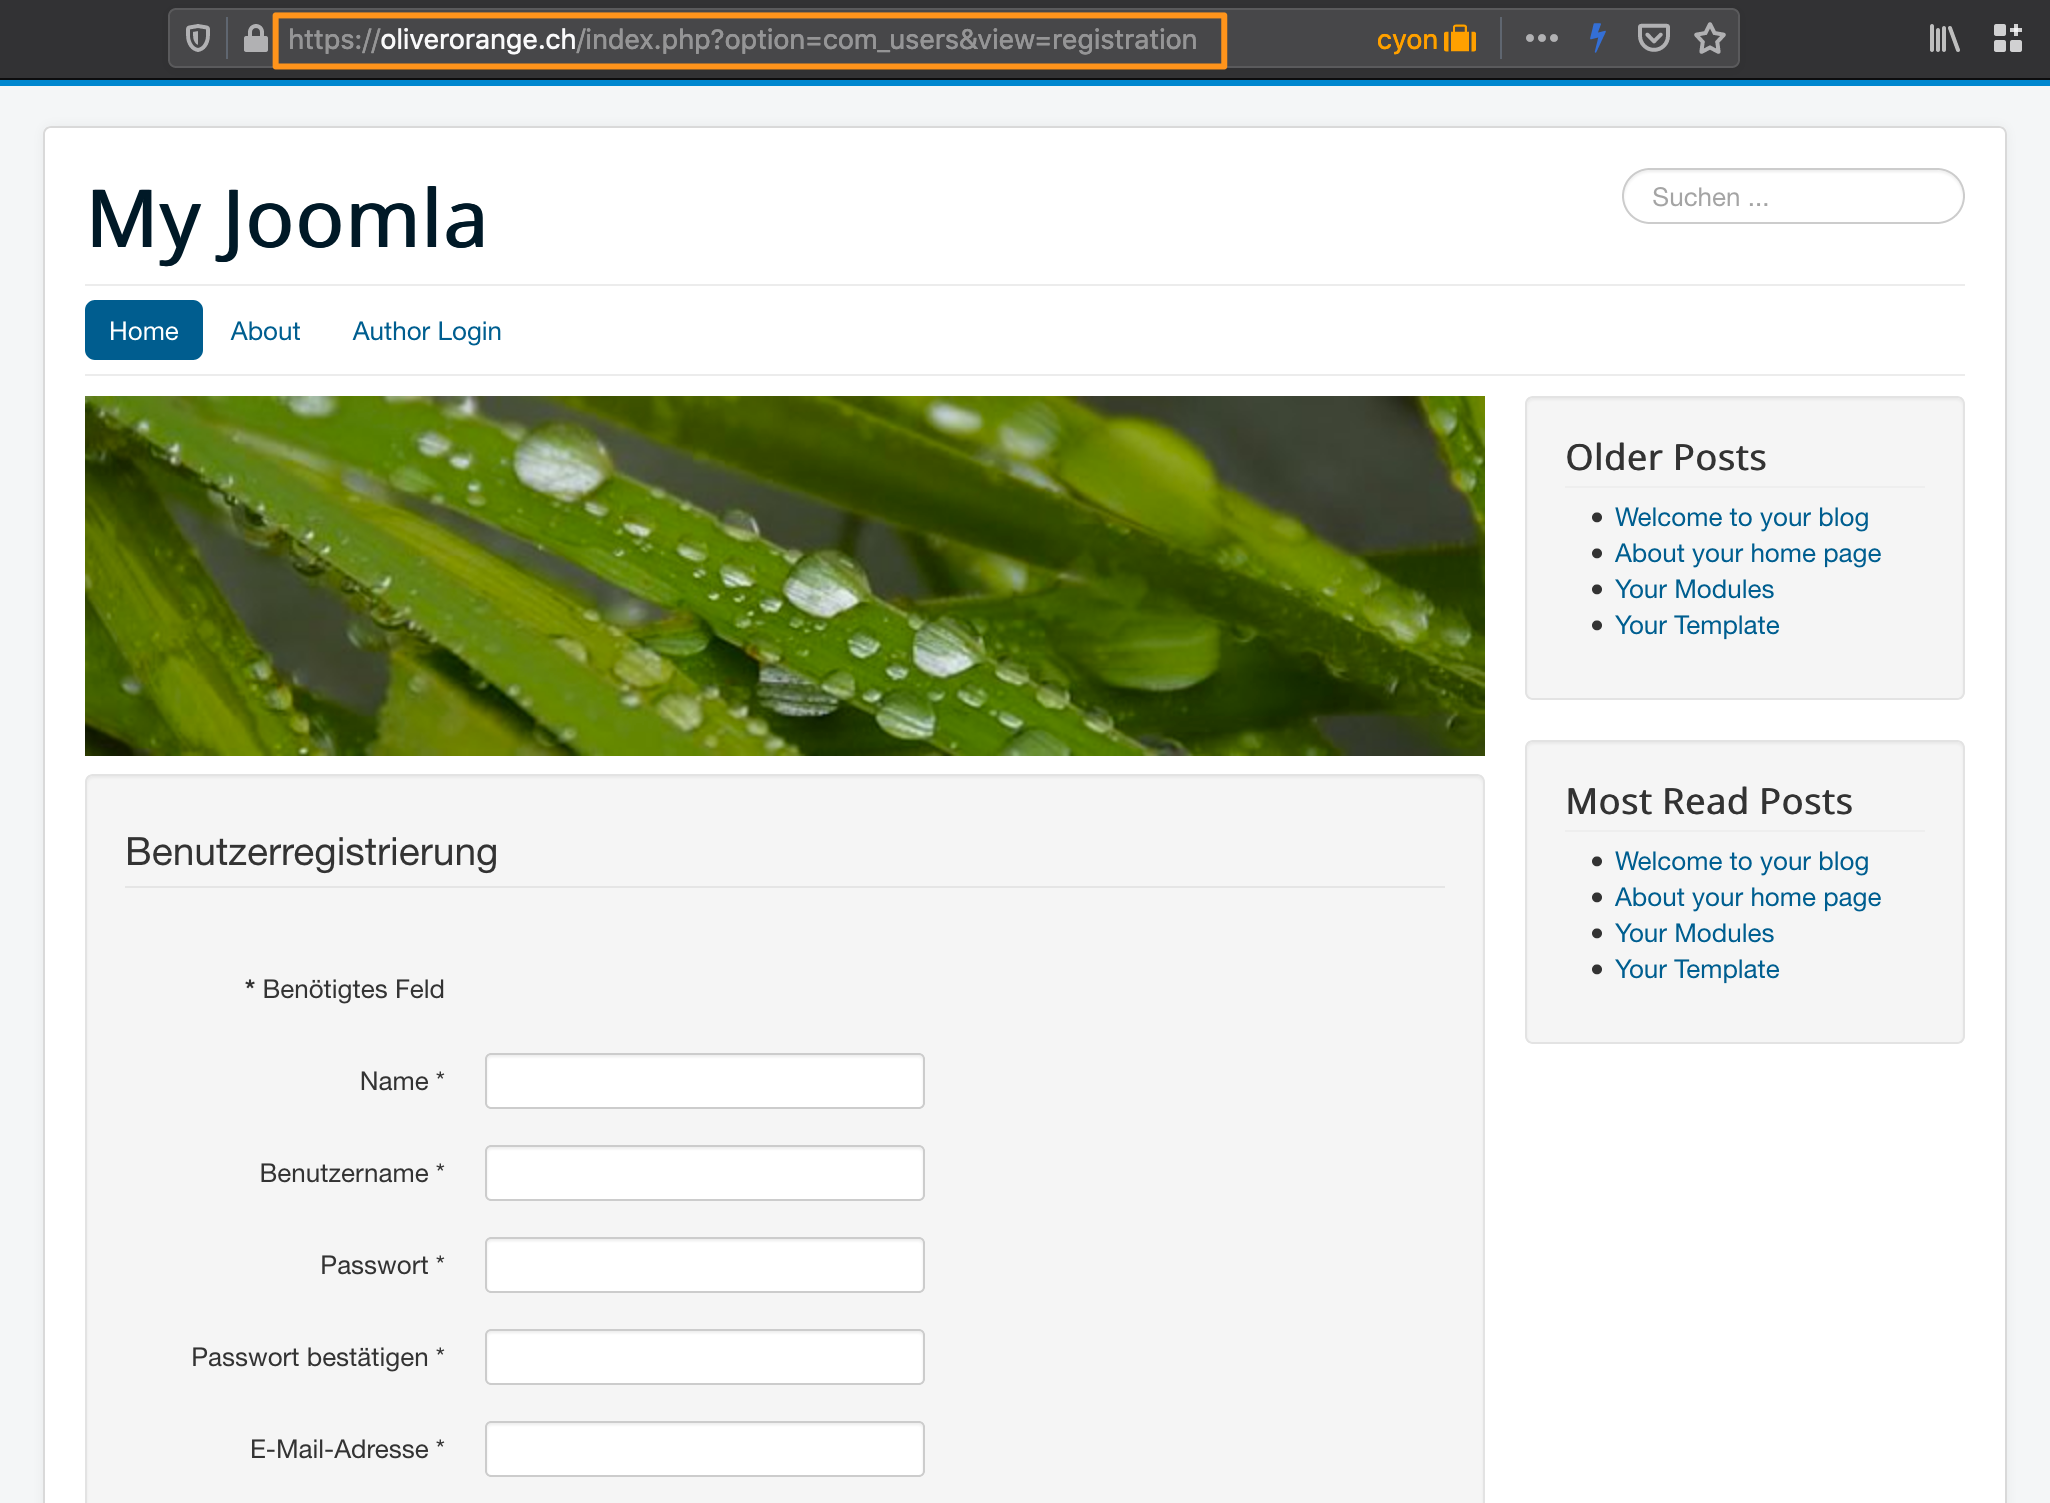 Formular zur Benutzerregistrierung in Joomla